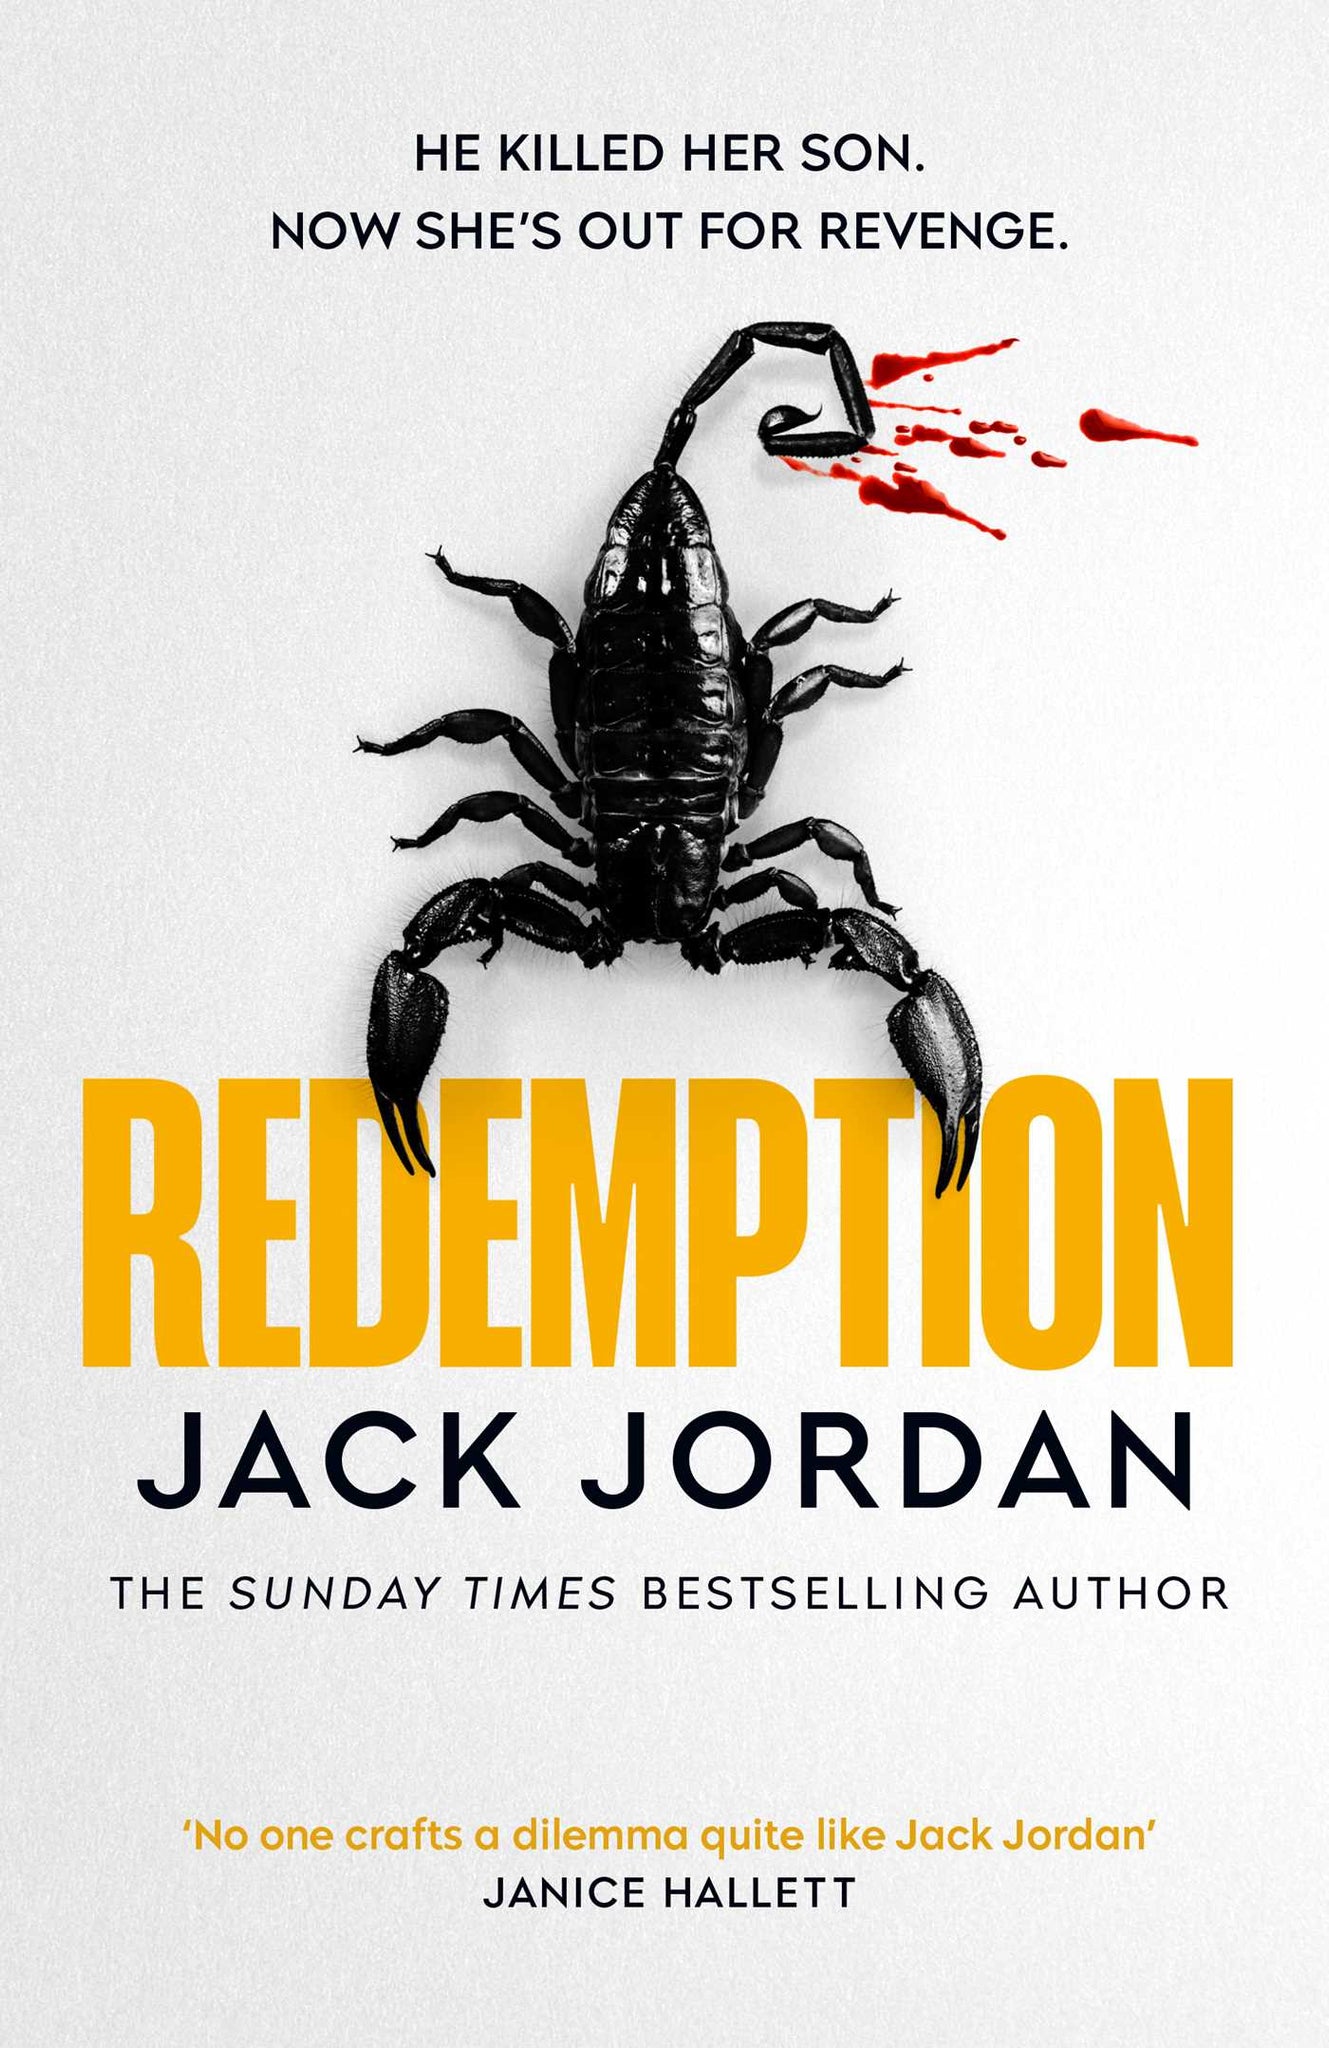 PRE-ORDER Redemption by Jack Jordan (Signed + dedicated)